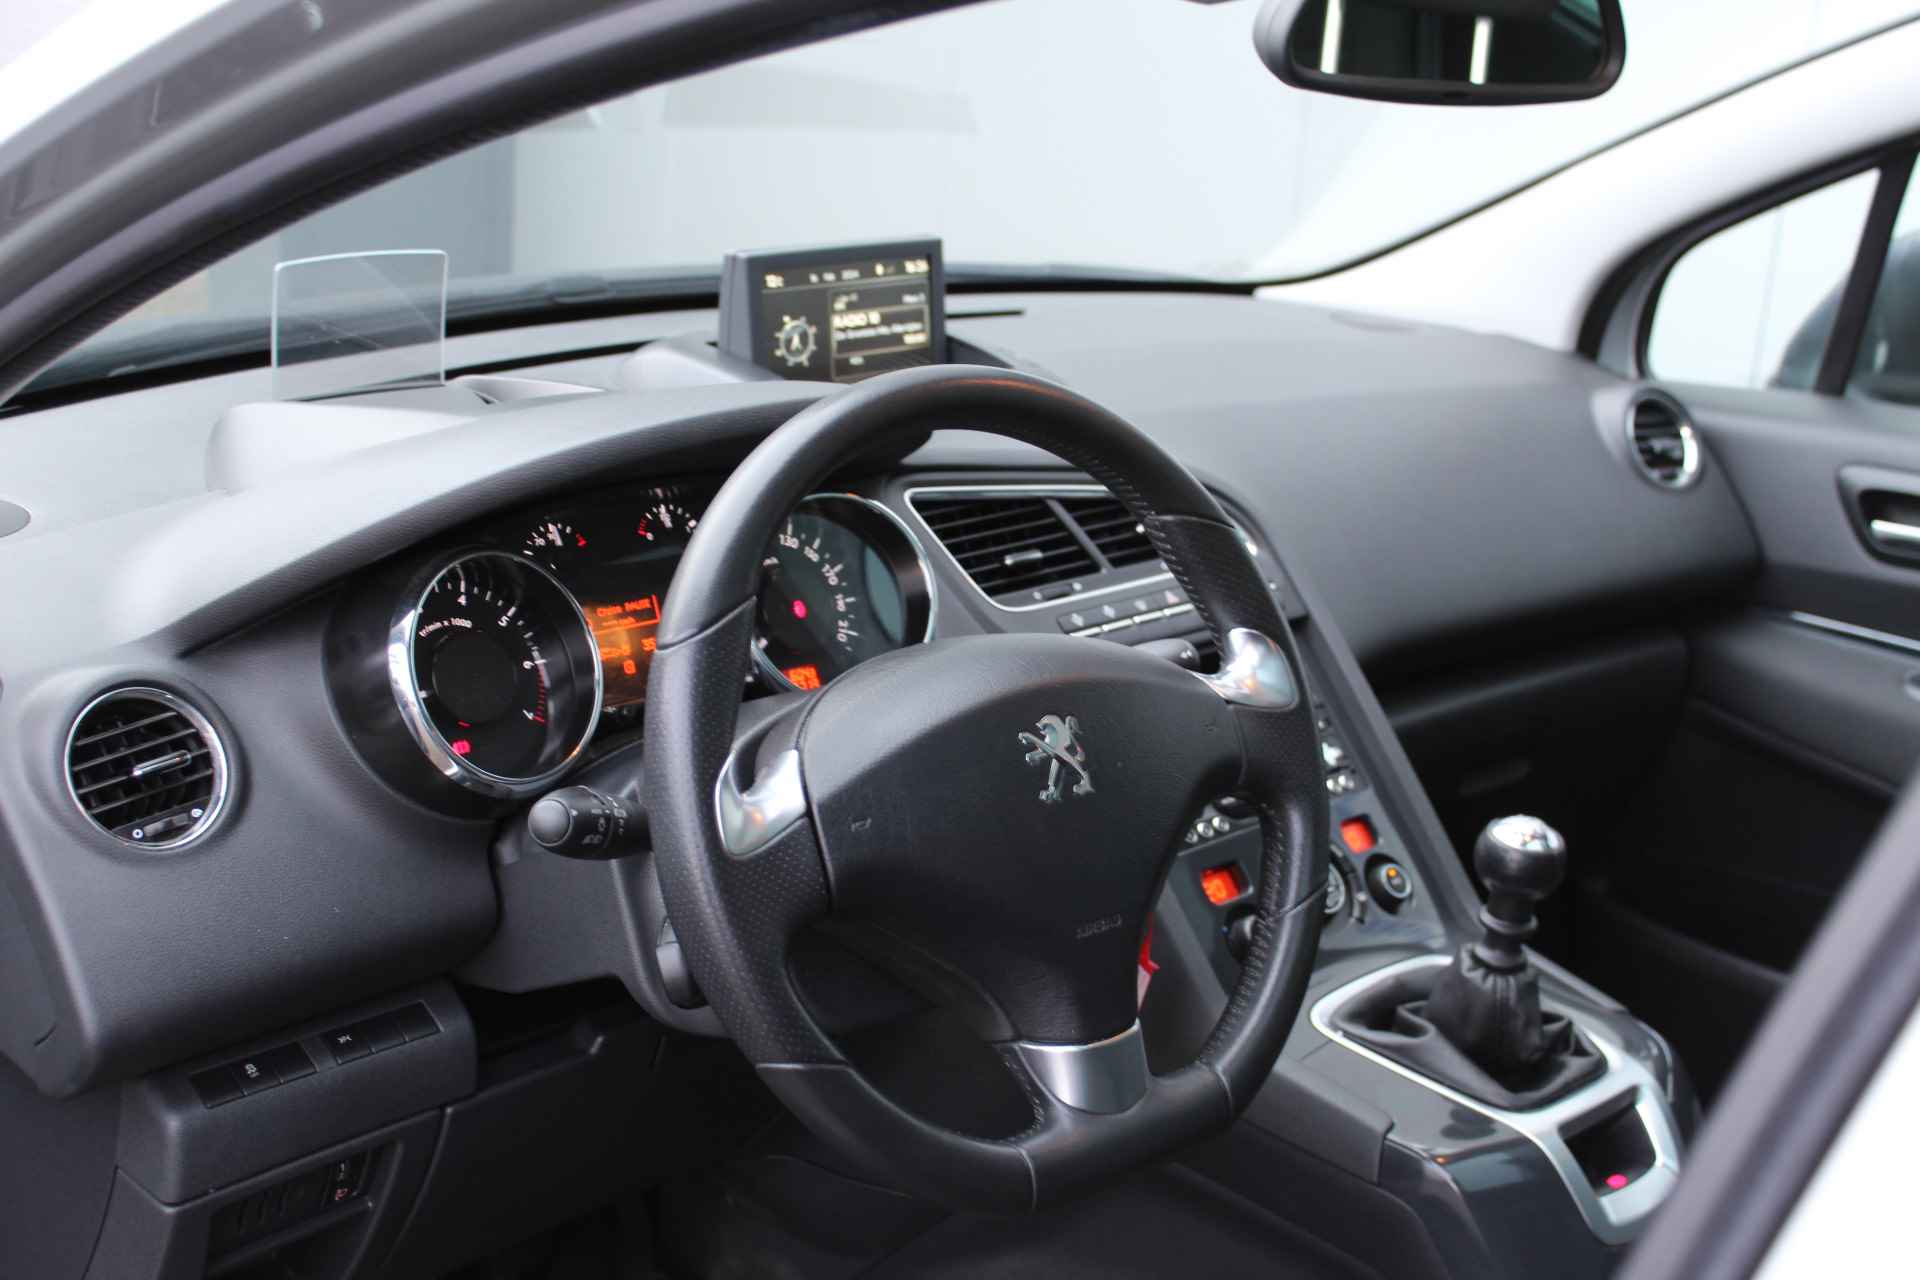 Peugeot 5008 1.6 THP Allure Trekhaak - Panoramadak met jalousie - Head-Up disp. - Navigatie Parkeer sensoren v+a - 17 Inch L.M. velgen - 29/47